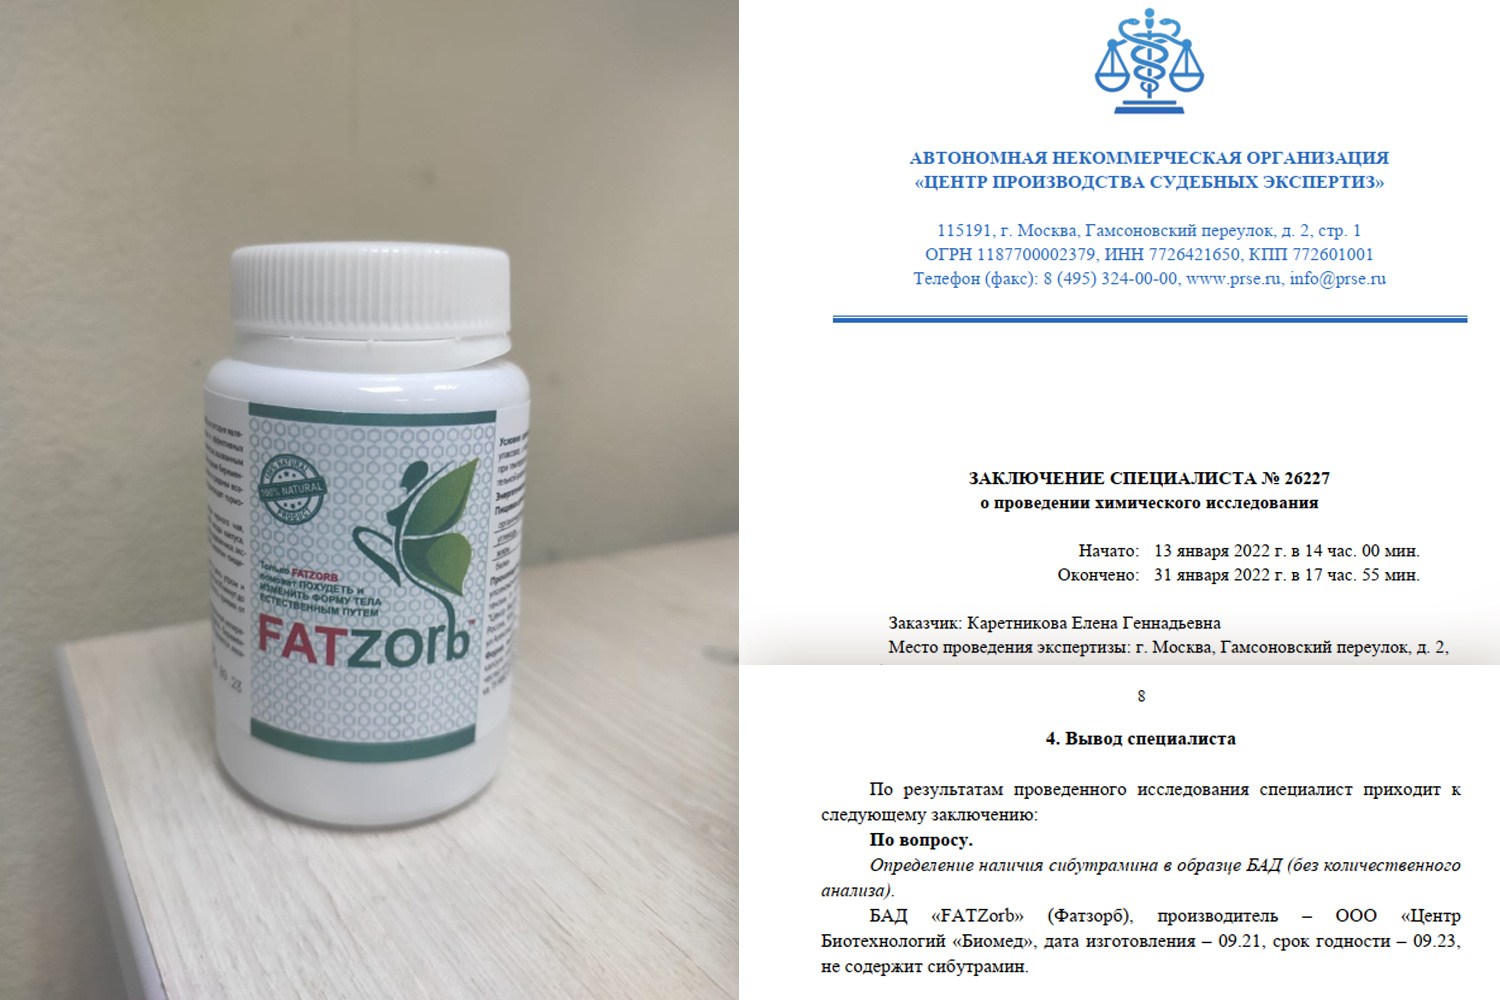 Адвокат Надежда Гришина провела экспертизу другой упаковки FatZorb, где сибутрамин не обнаружен. Это, считает адвокат, доказывает, Омельянчук купила подделку, о чем никак не могла знать